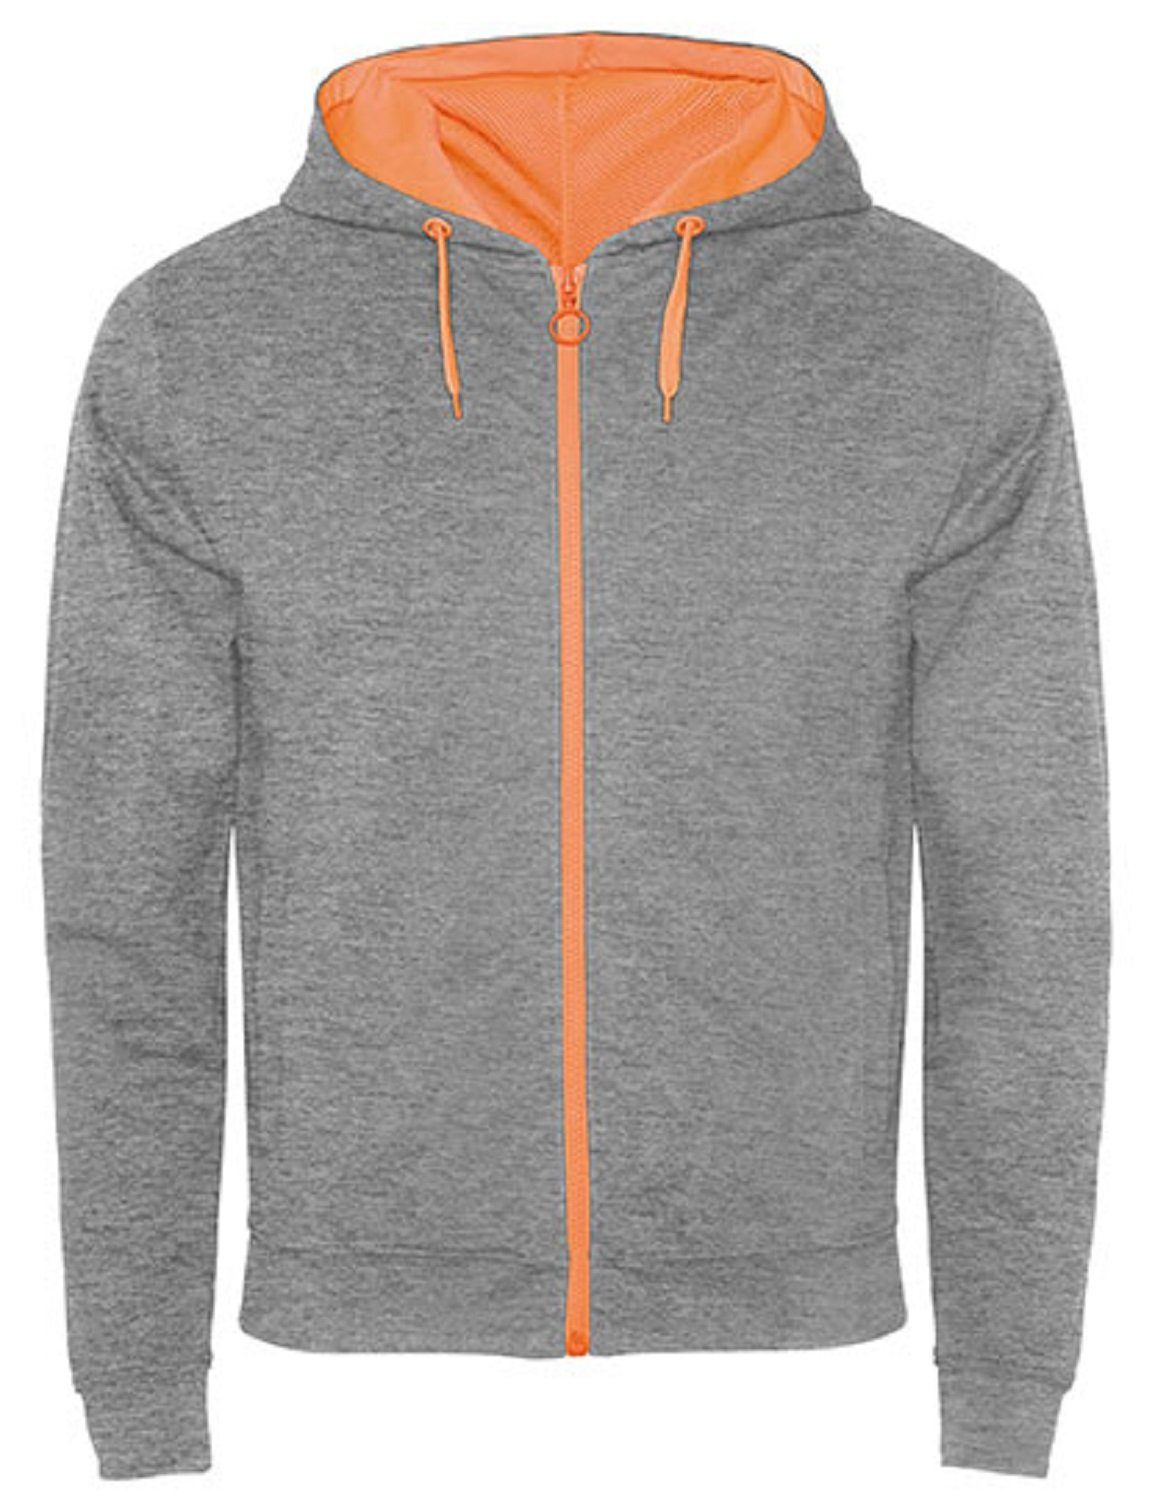 Roly Kapuzensweatjacke Herren Sweat-Jacke mit Kapuze / Kapuzensweater mit Reißverschluss auch für Frauen geeignet Grau/ Orange